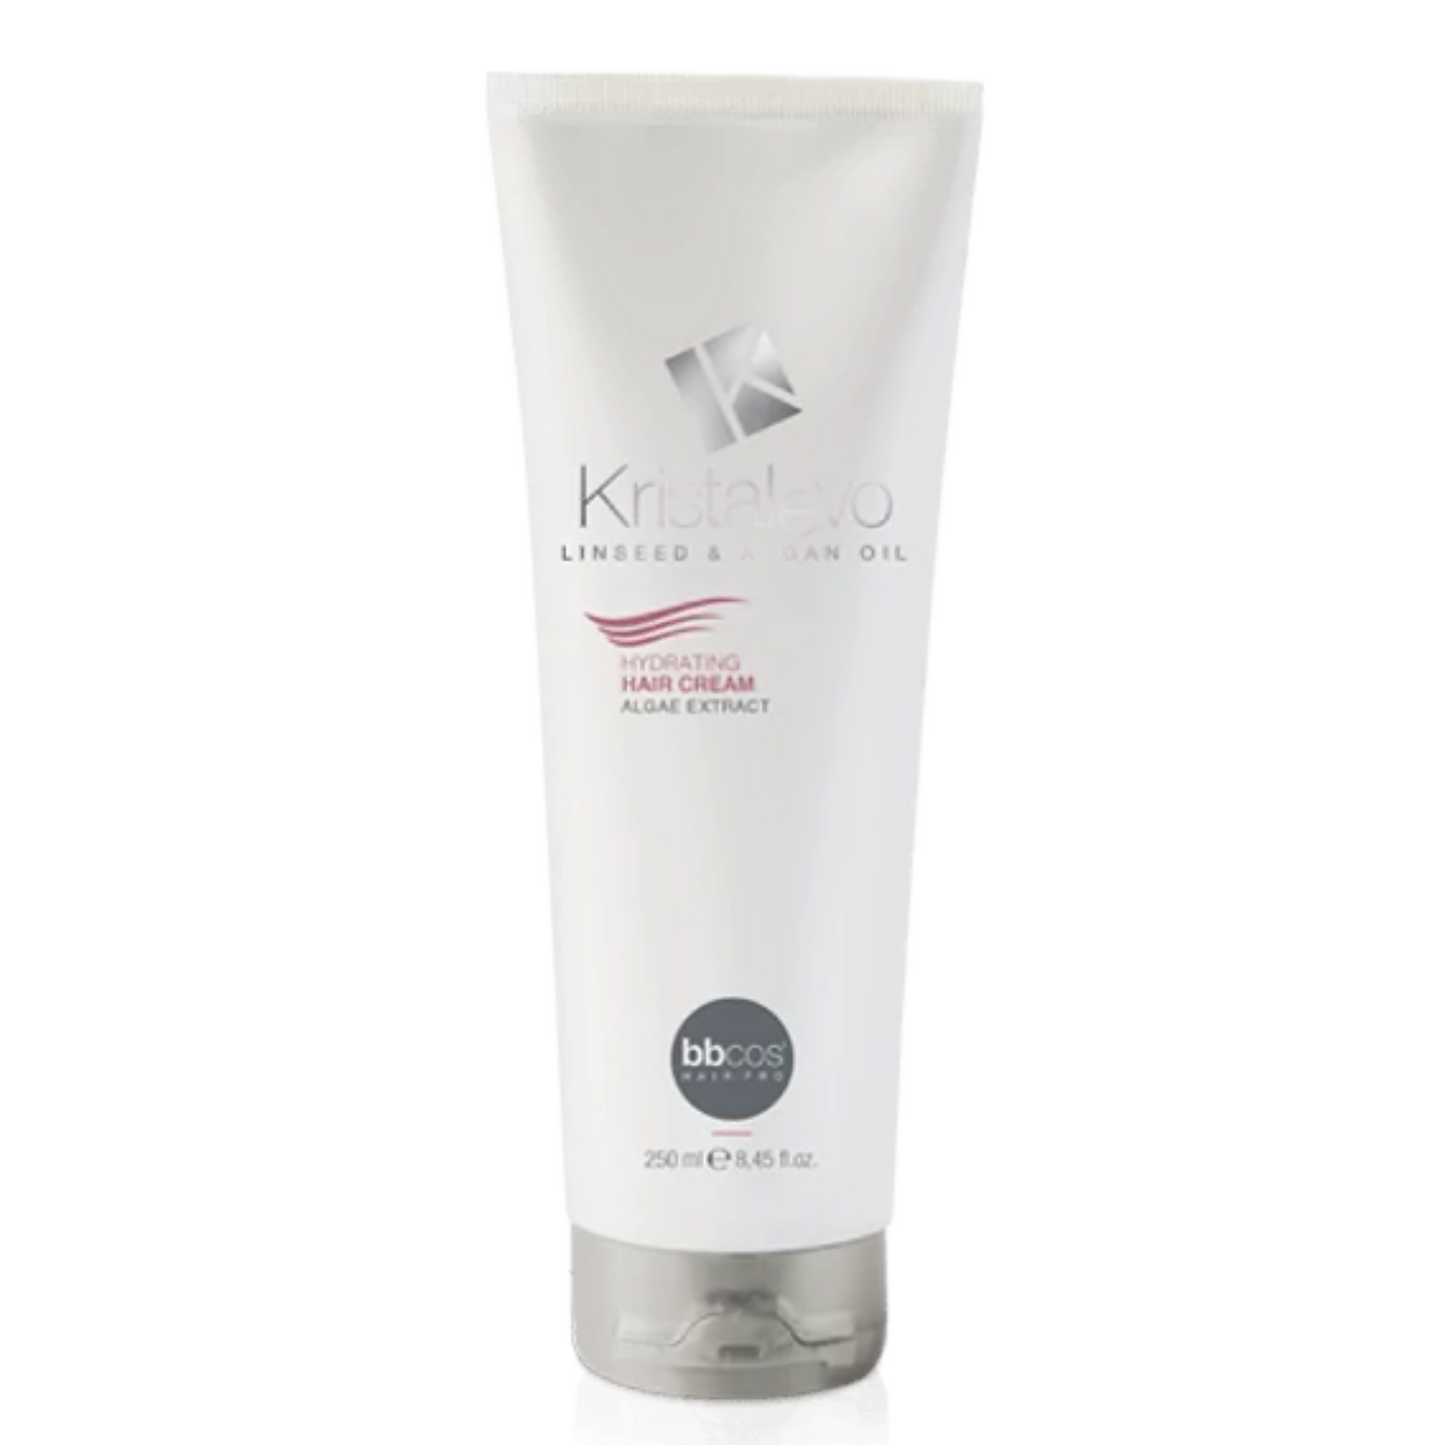 BBCOS Kristal Evo Hydrating Hair Cream 250 ML